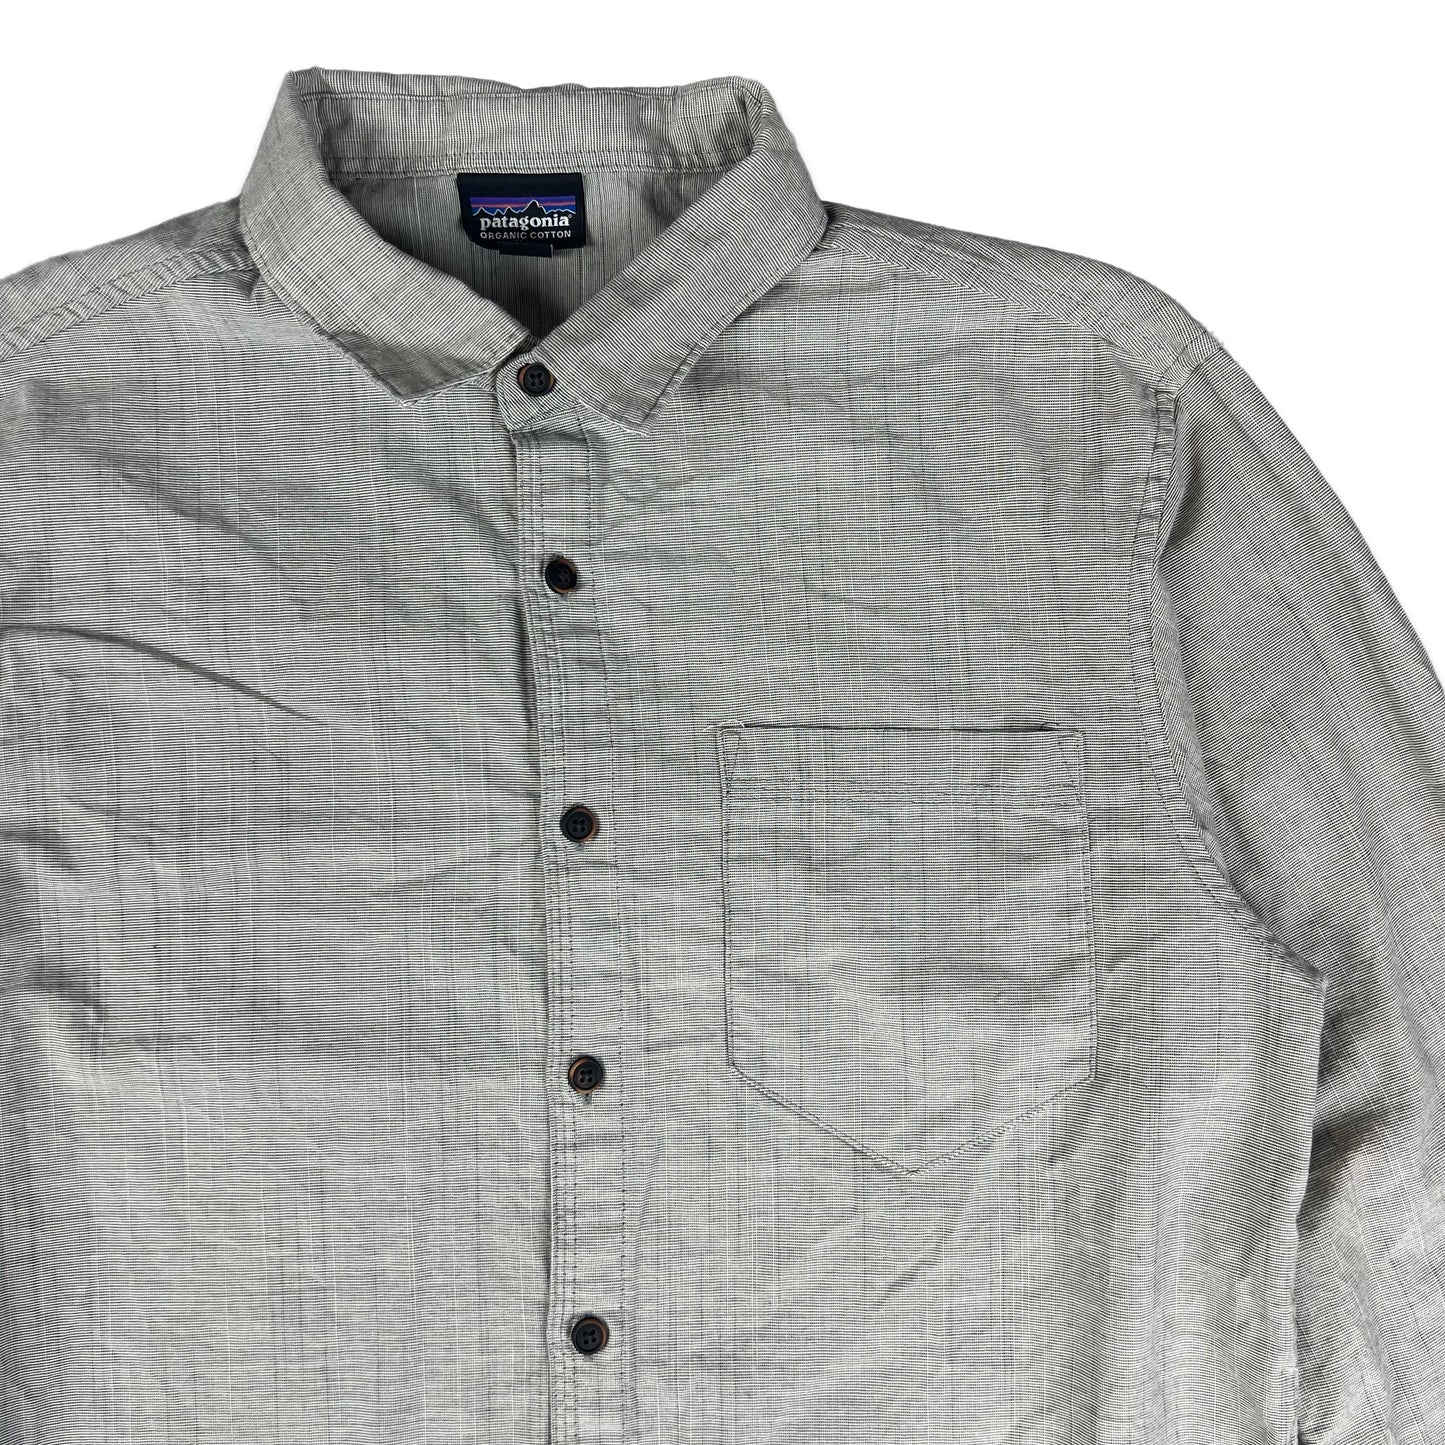 00s Patagonia Grey Check Shirt S M